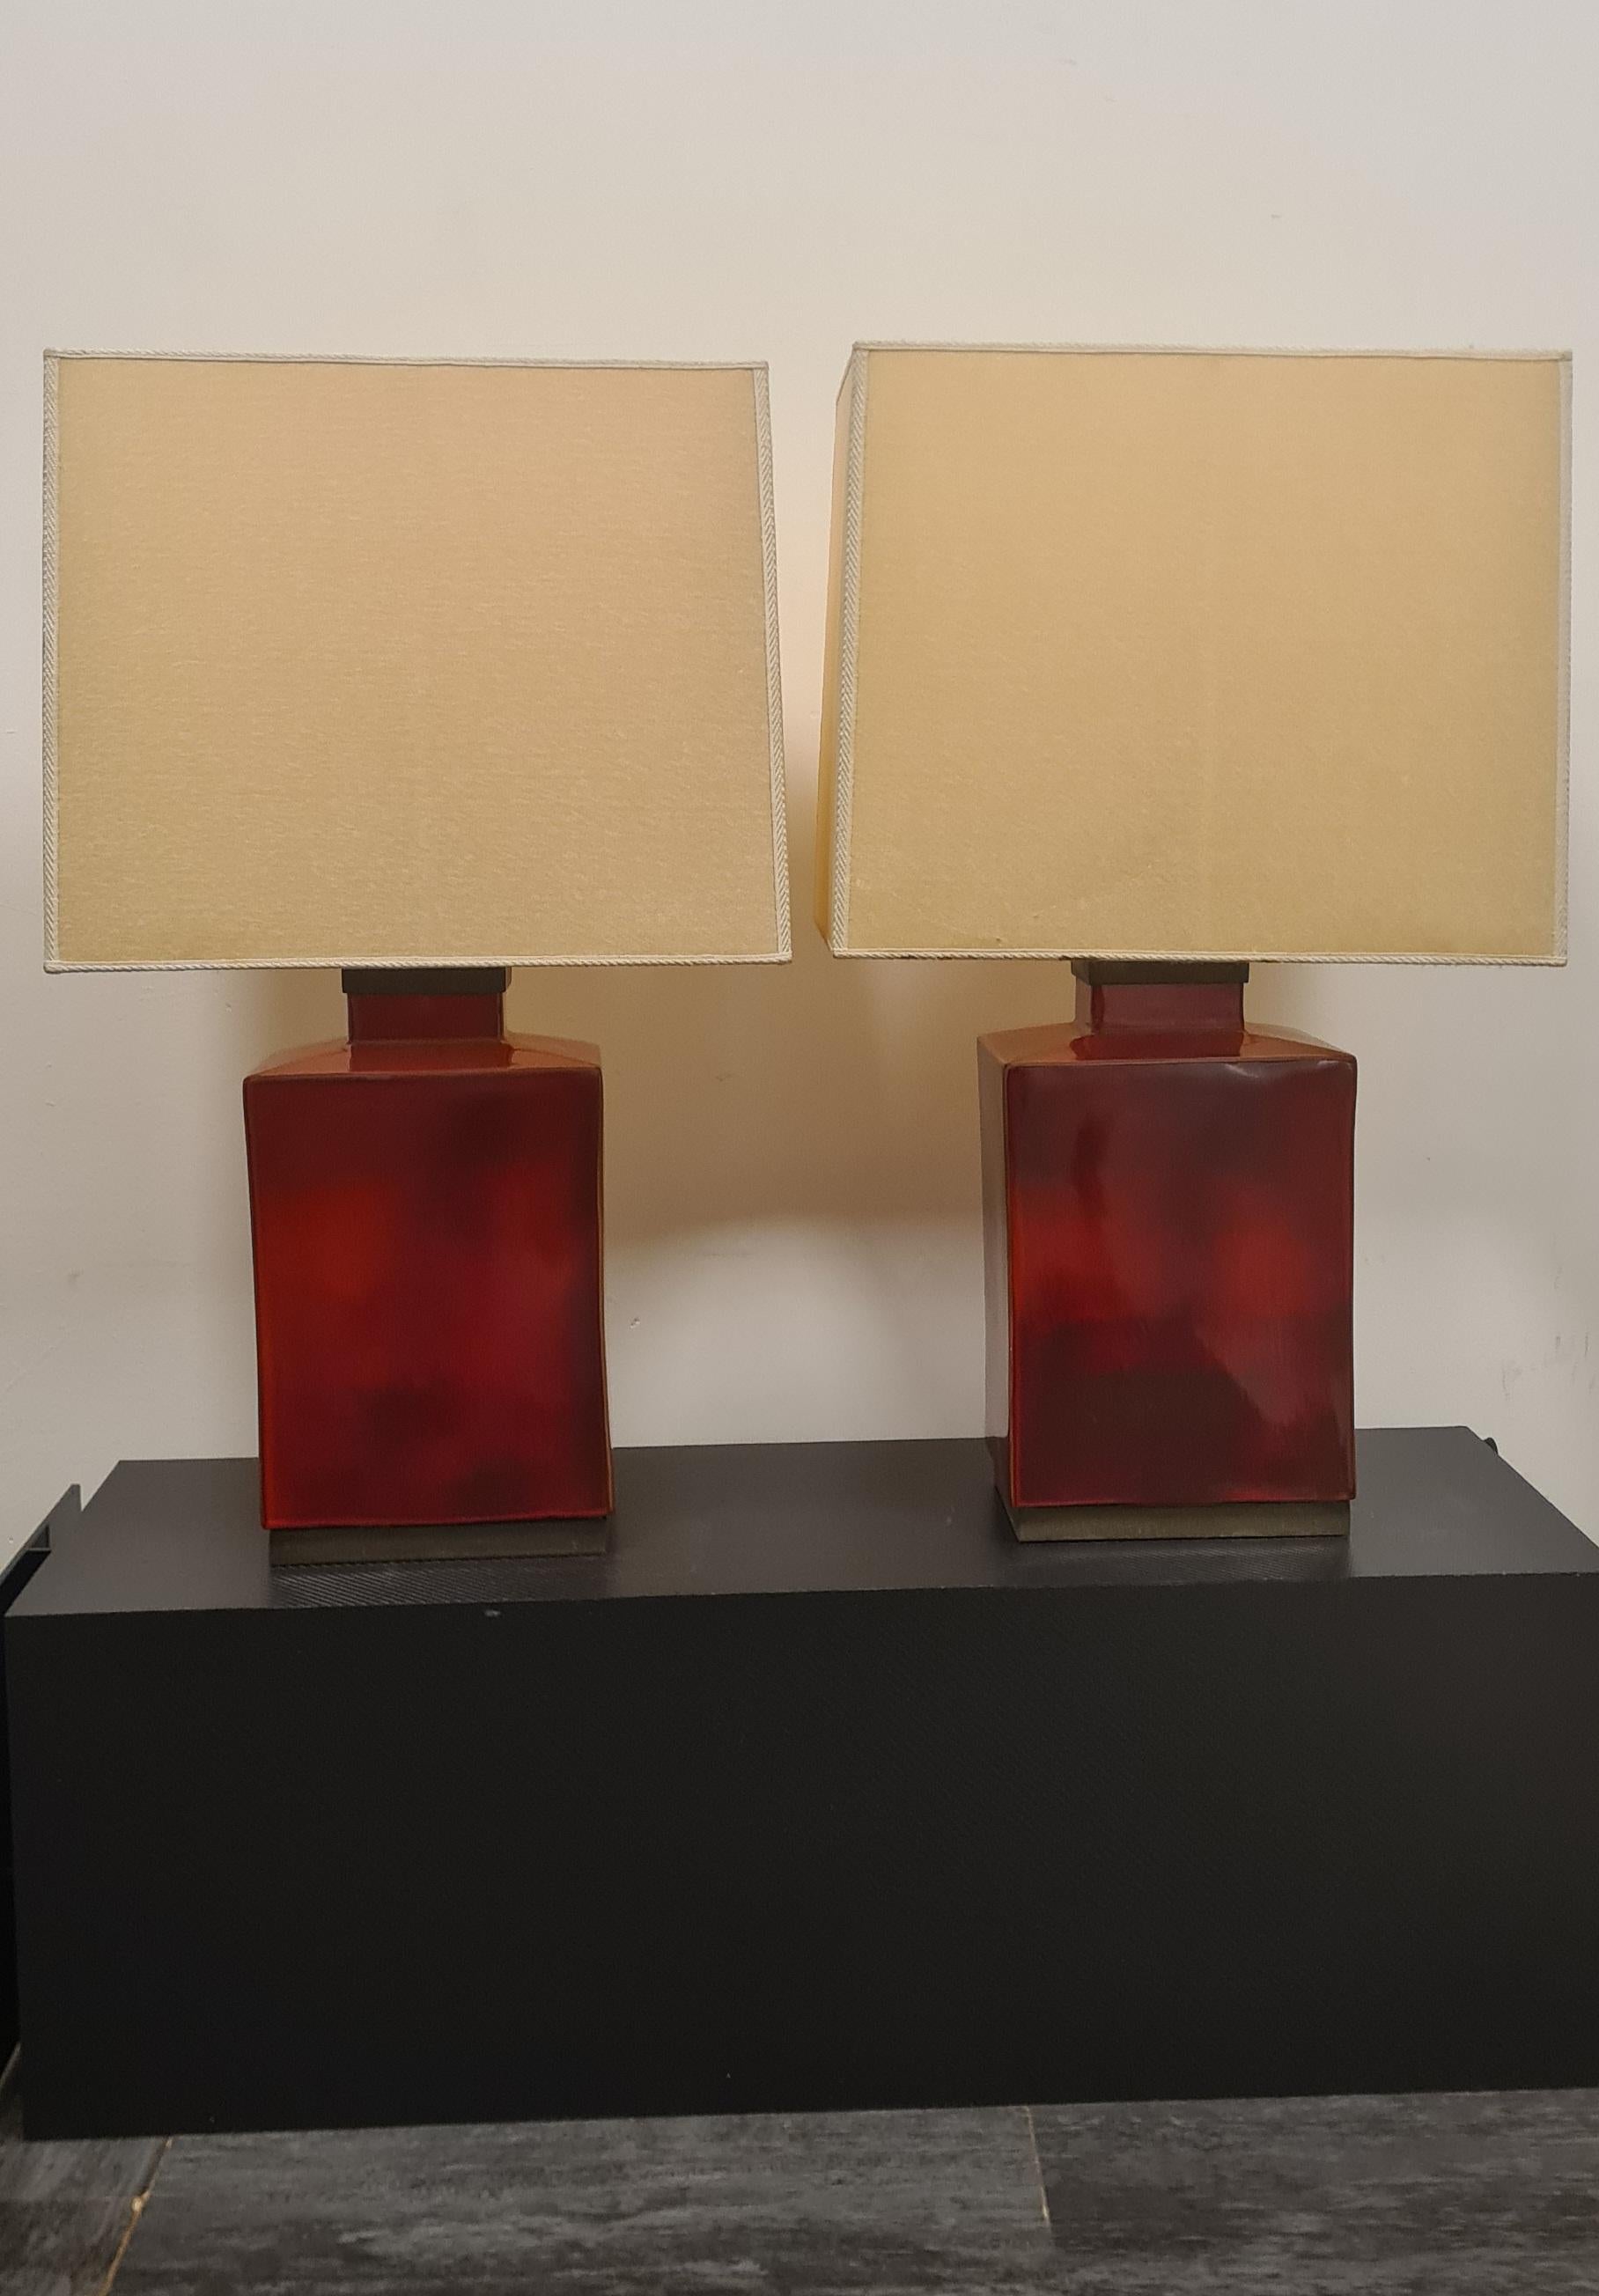 Coppia di abat-jour in ceramica smaltata rosse e ottone.

Queste eleganti lampade da tavolo rosse aggiungeranno un tocco di vivacità e stile a qualsiasi ambiente

Collocabili negli anni 80', le lampade sono un esempio di raffinatezza ed